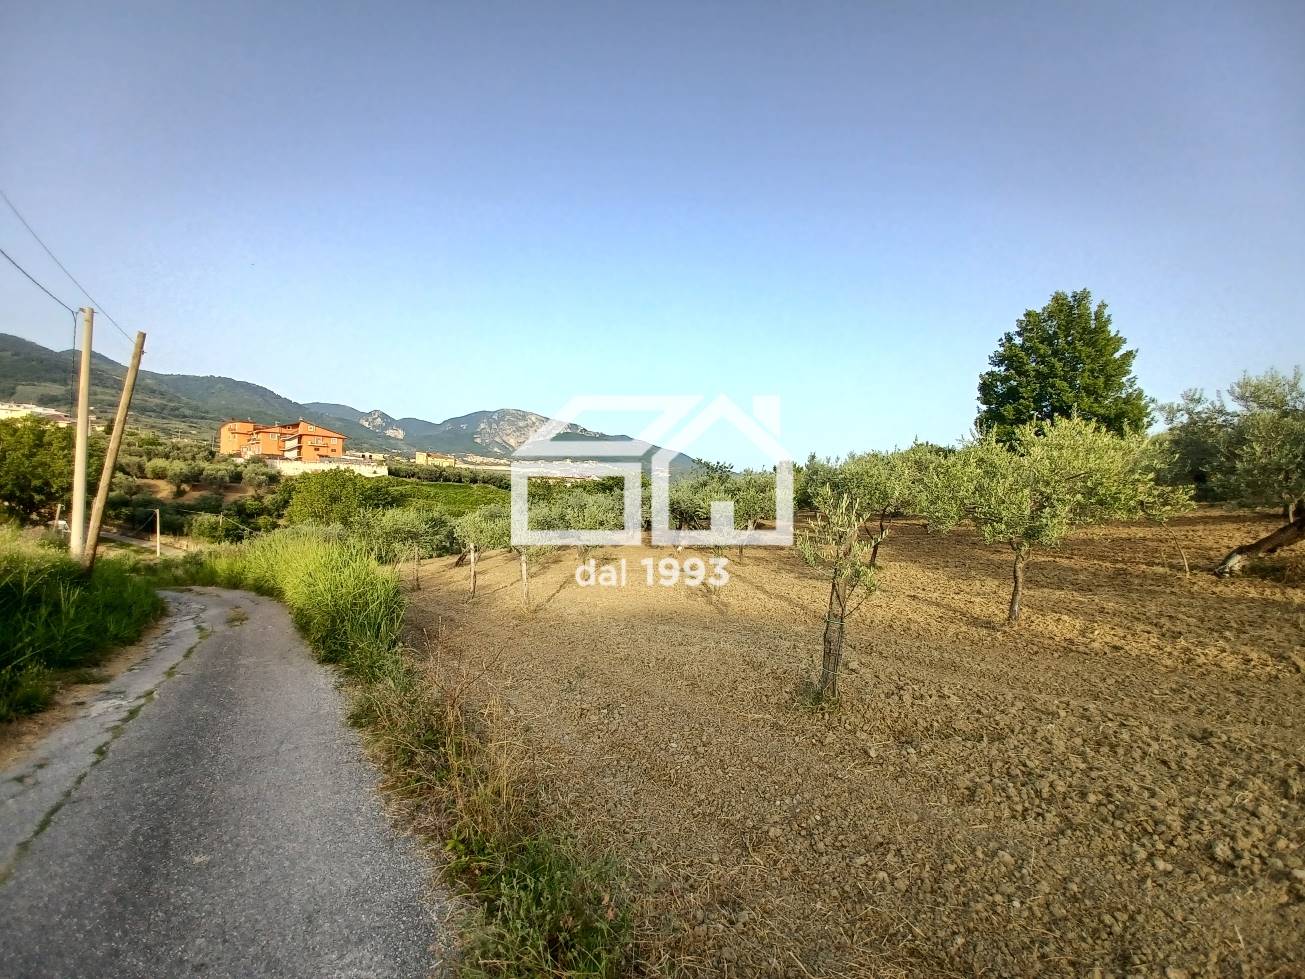 Terreno Agricolo in vendita a Montecorvino Rovella, 9999 locali, prezzo € 39.000 | PortaleAgenzieImmobiliari.it